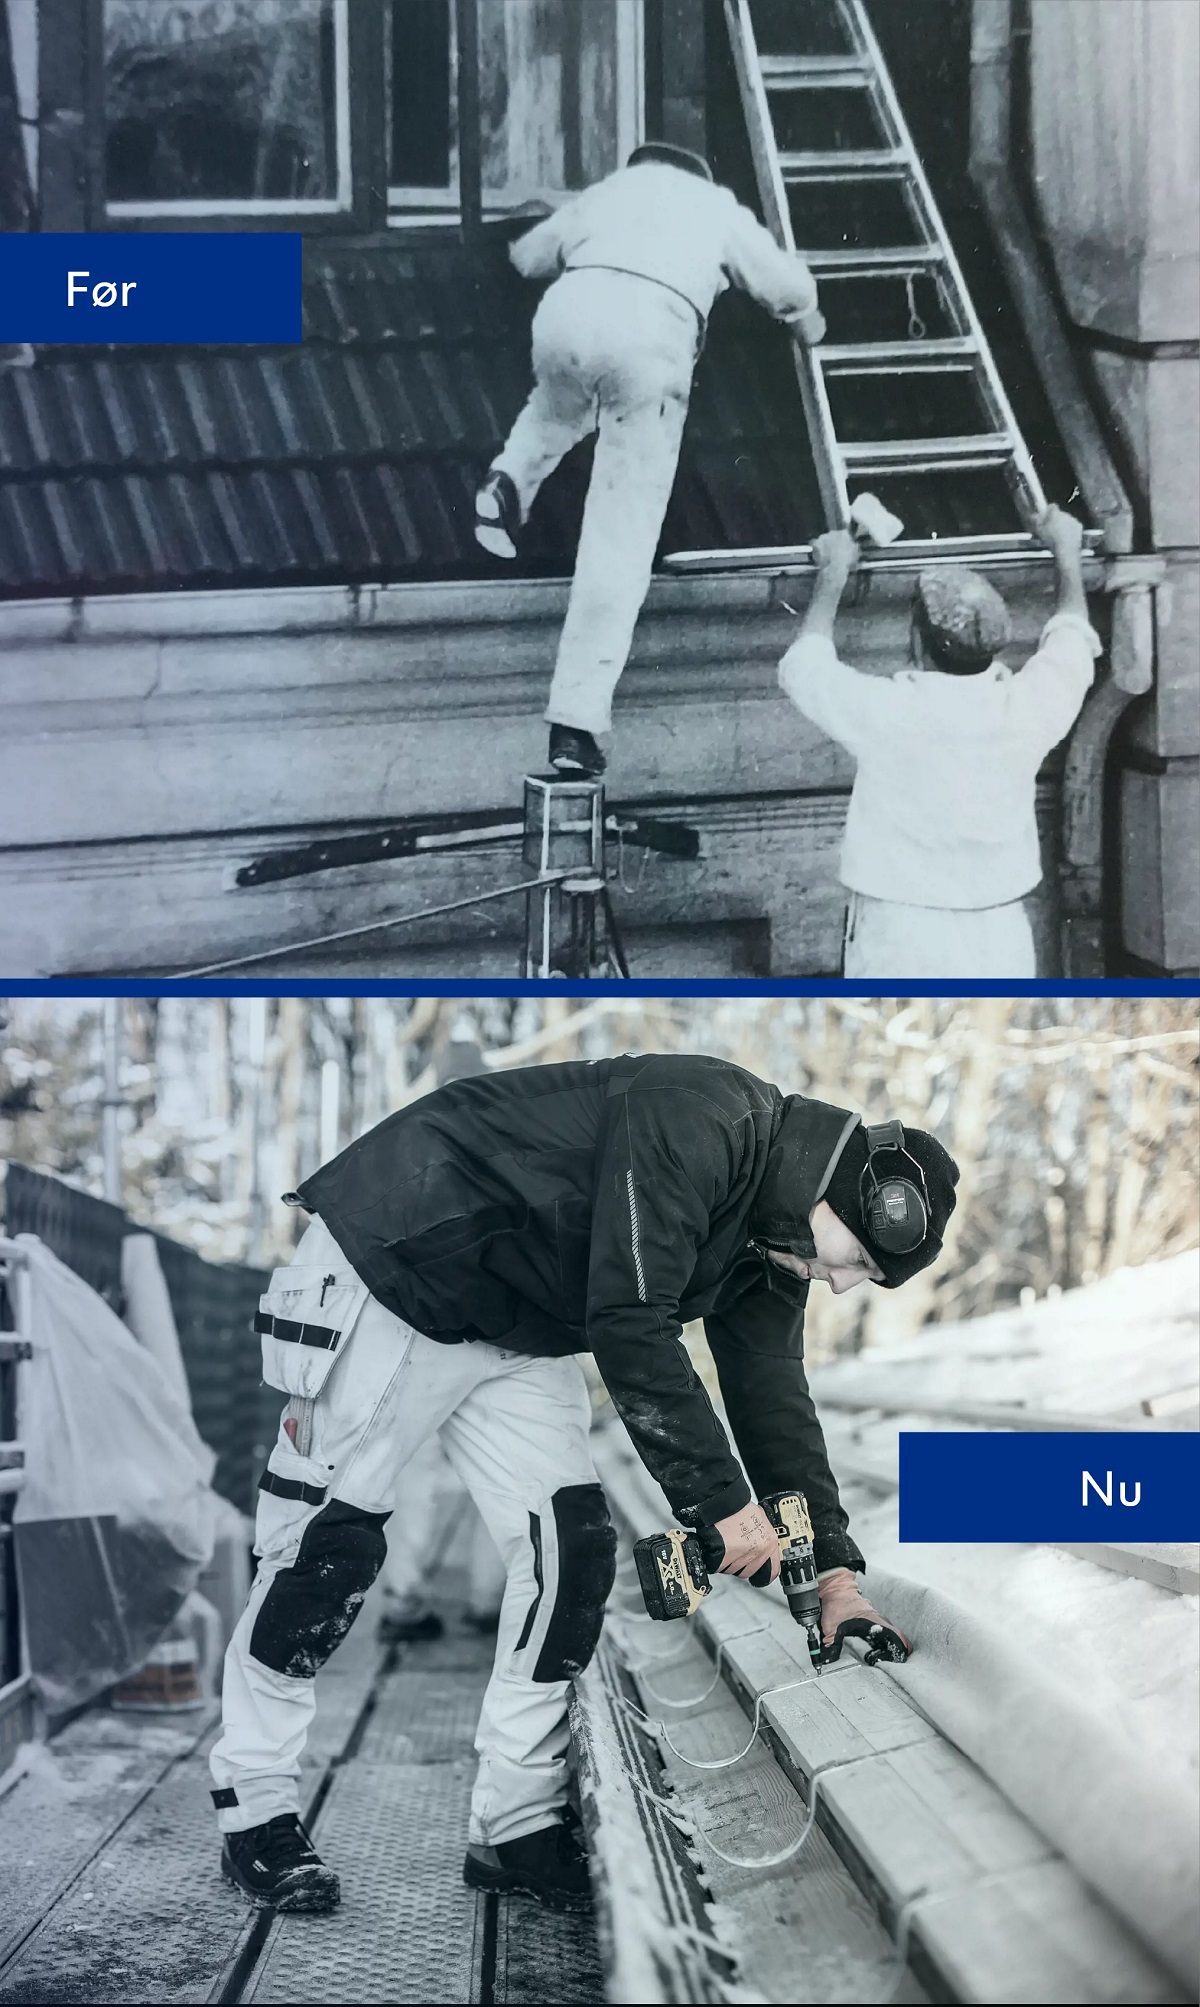 Før og nu billeder af tagarbejde. Før billedet er to mænd der arbejder usikker på et tag. Nu billedet er en mand der arbejder på et tag, stående på et stillads.